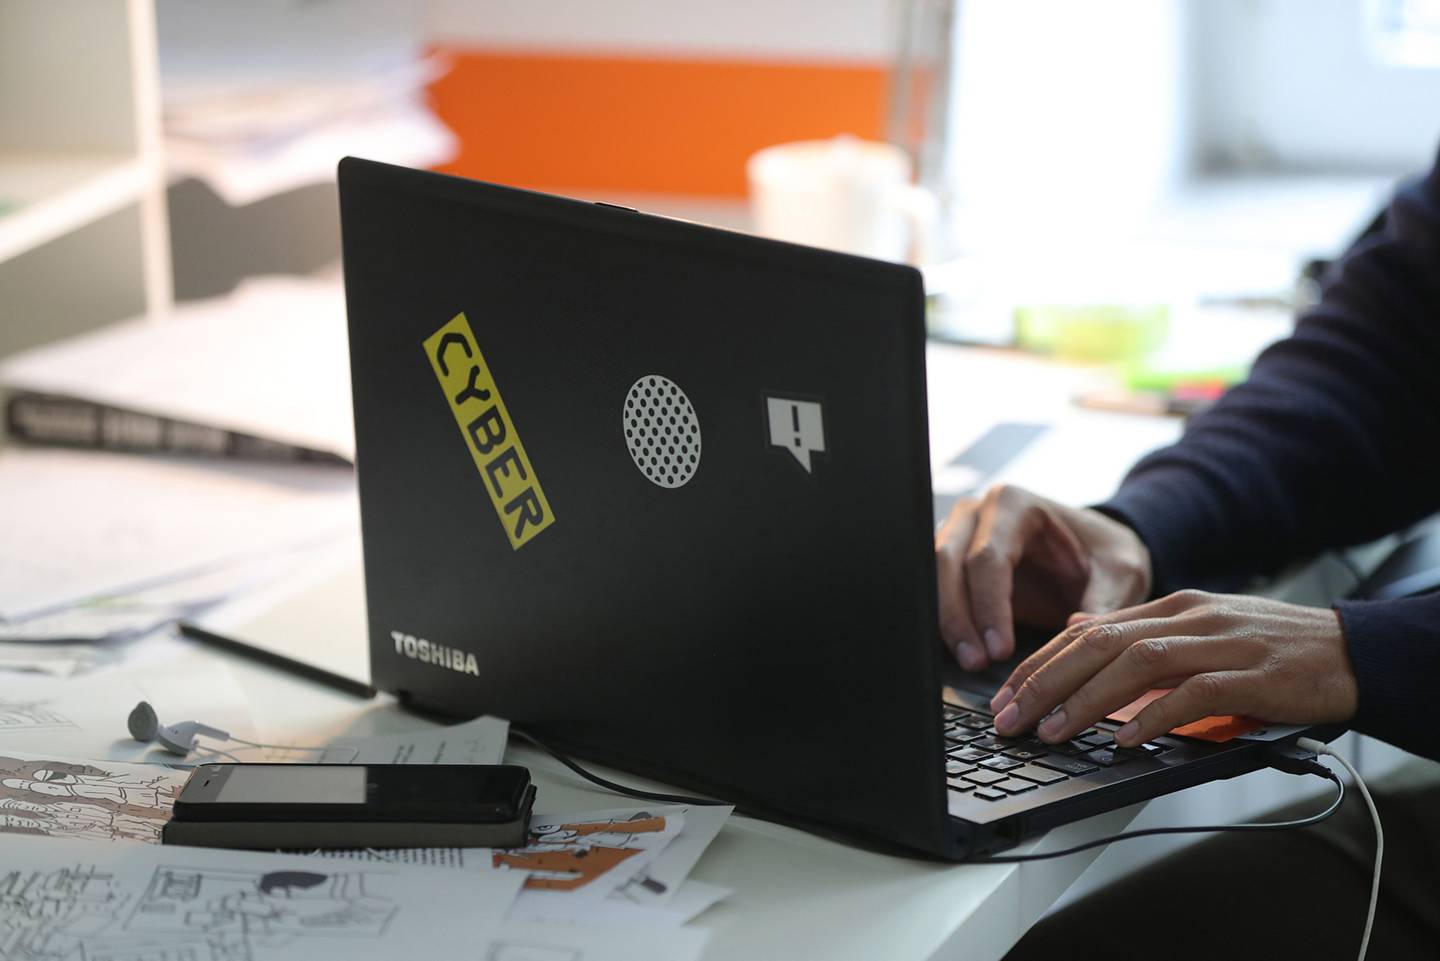 Un empleado utiliza un portátil Toshiba Corp. decorado con una pegatina "Cyber".